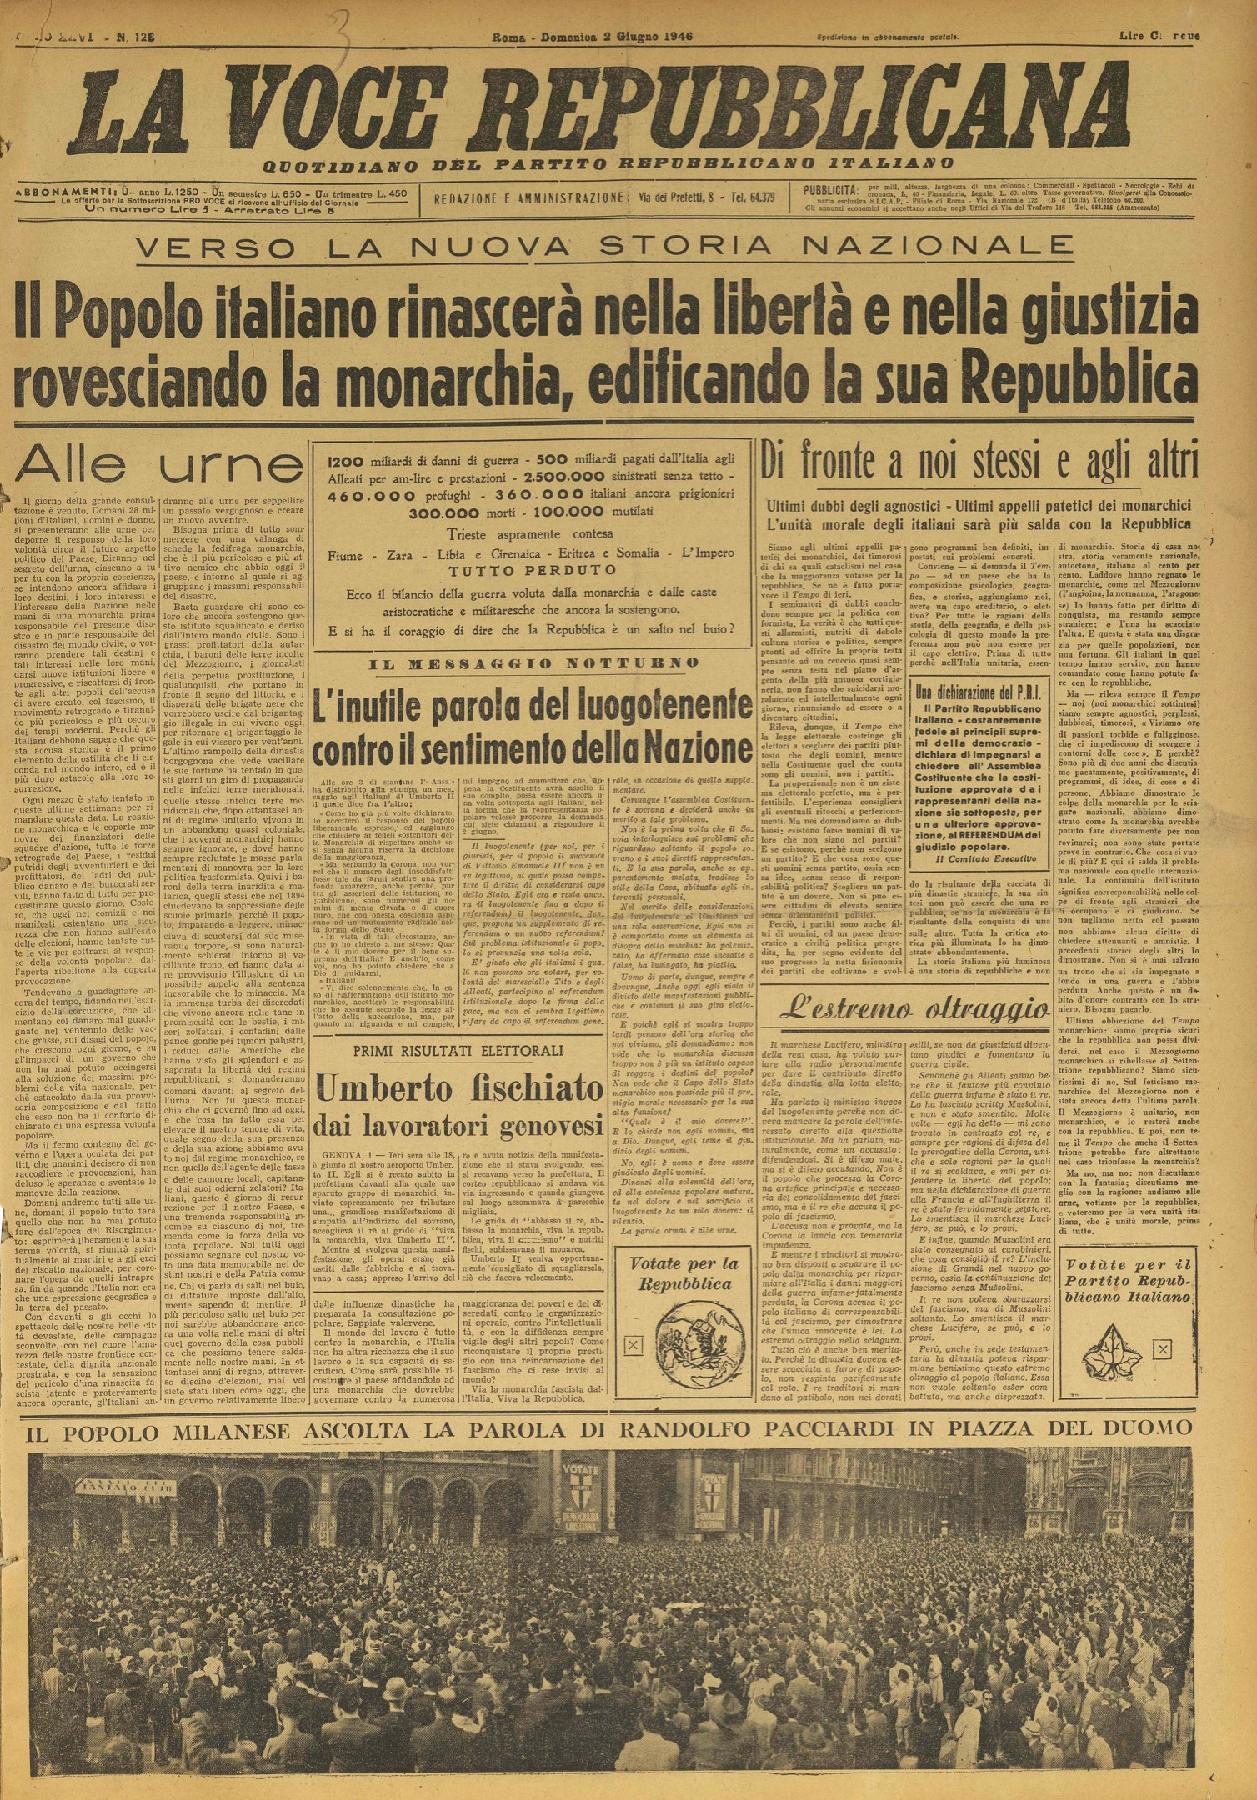 2 giugno 1946 - Prima pagina del quotidiano "La Voce Repubblicana".